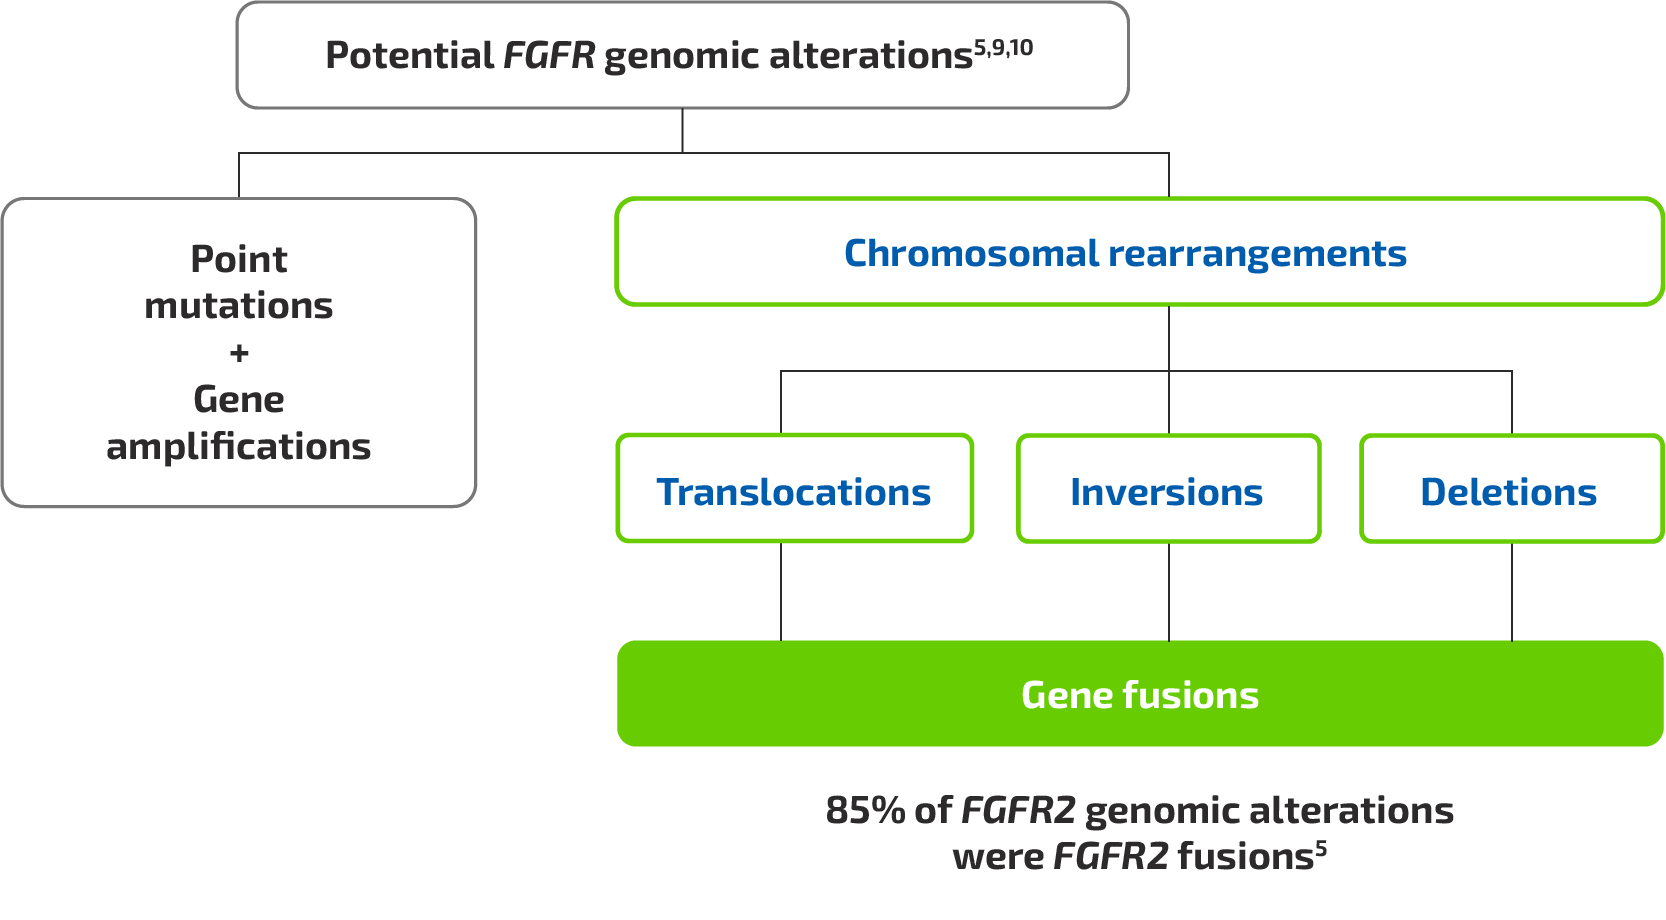 FGFR genomic alterations